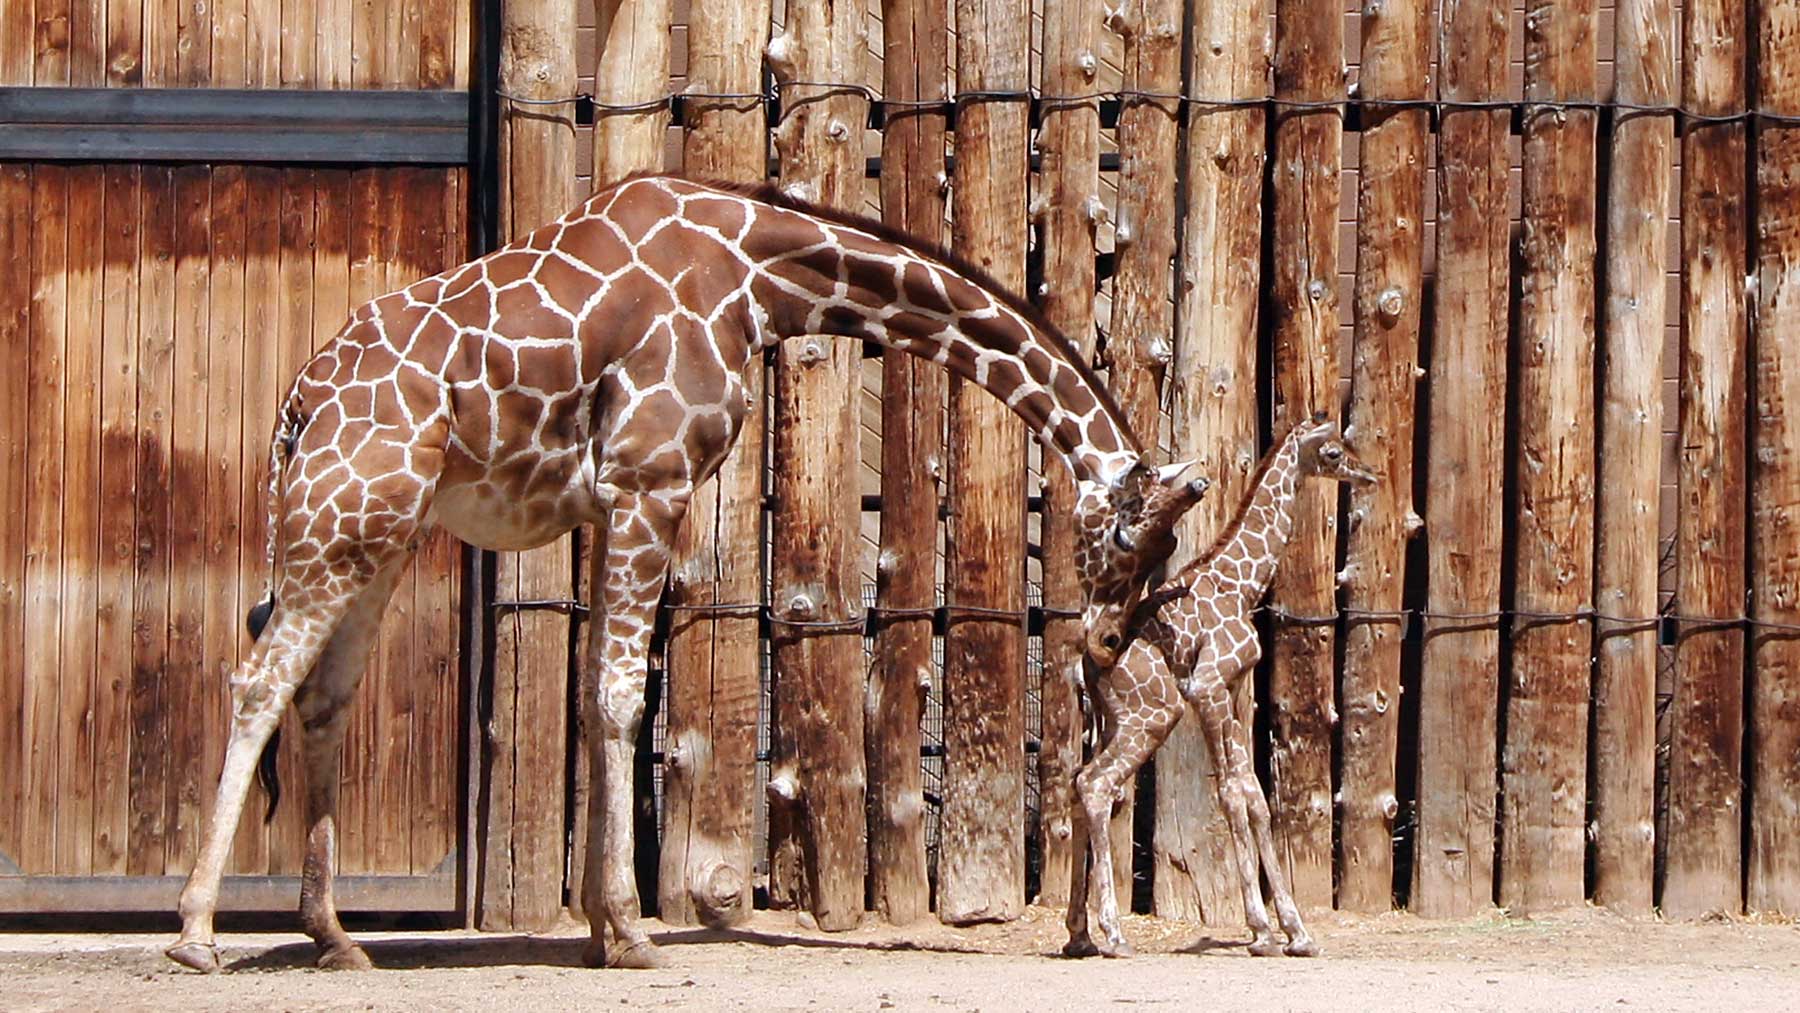 Giraff som knuffar sitt barn framför sig i en "nudge"